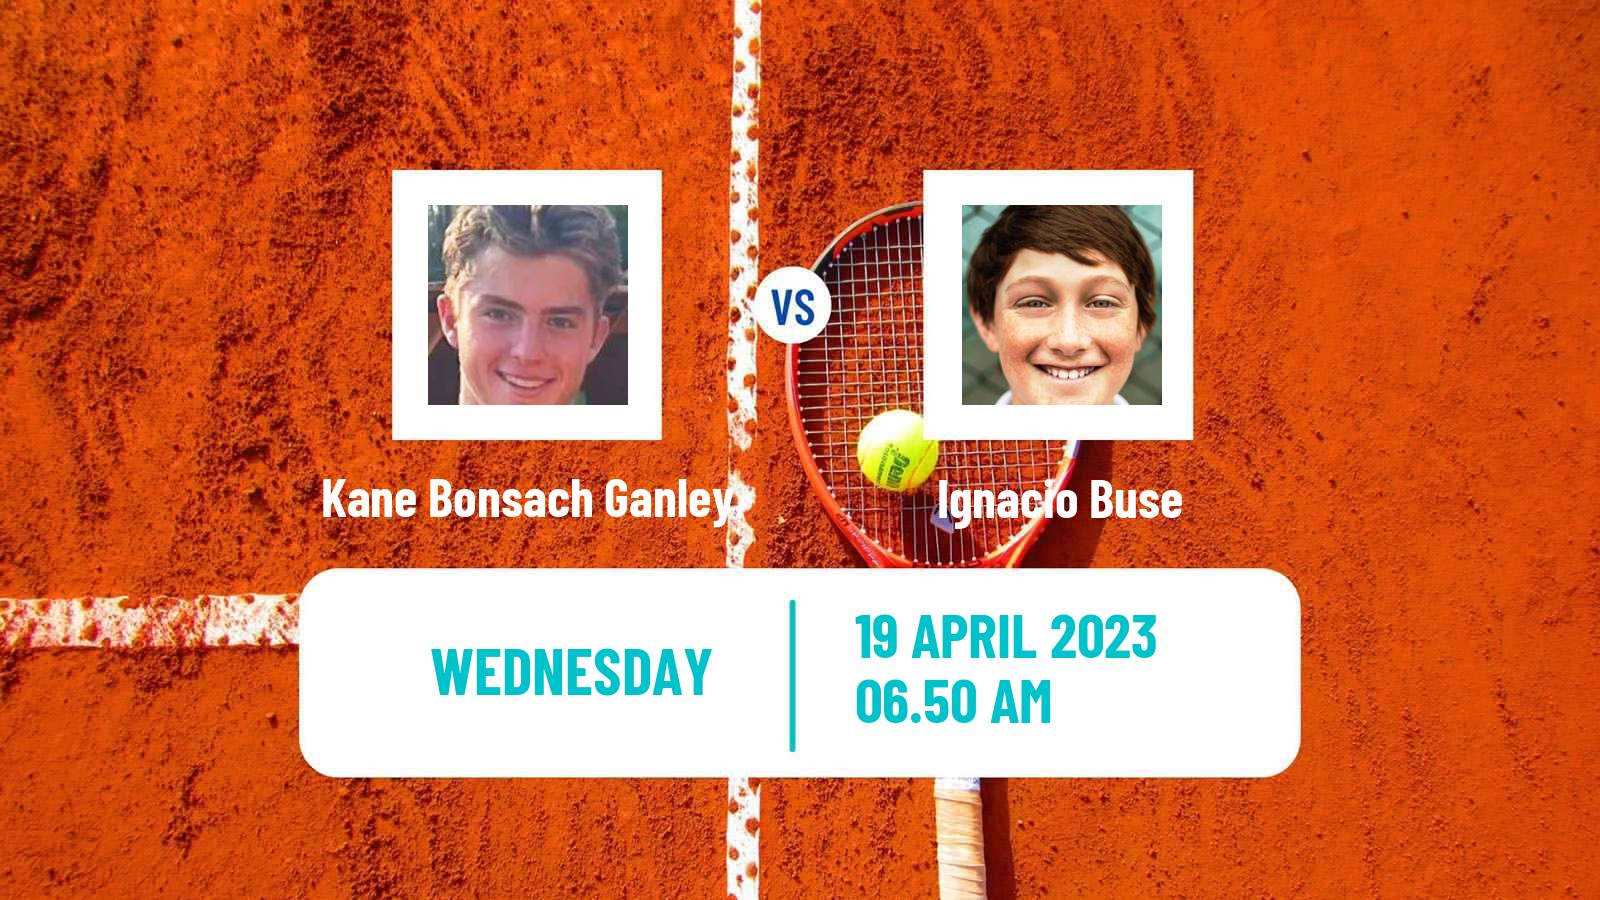 Tennis ITF Tournaments Kane Bonsach Ganley - Ignacio Buse